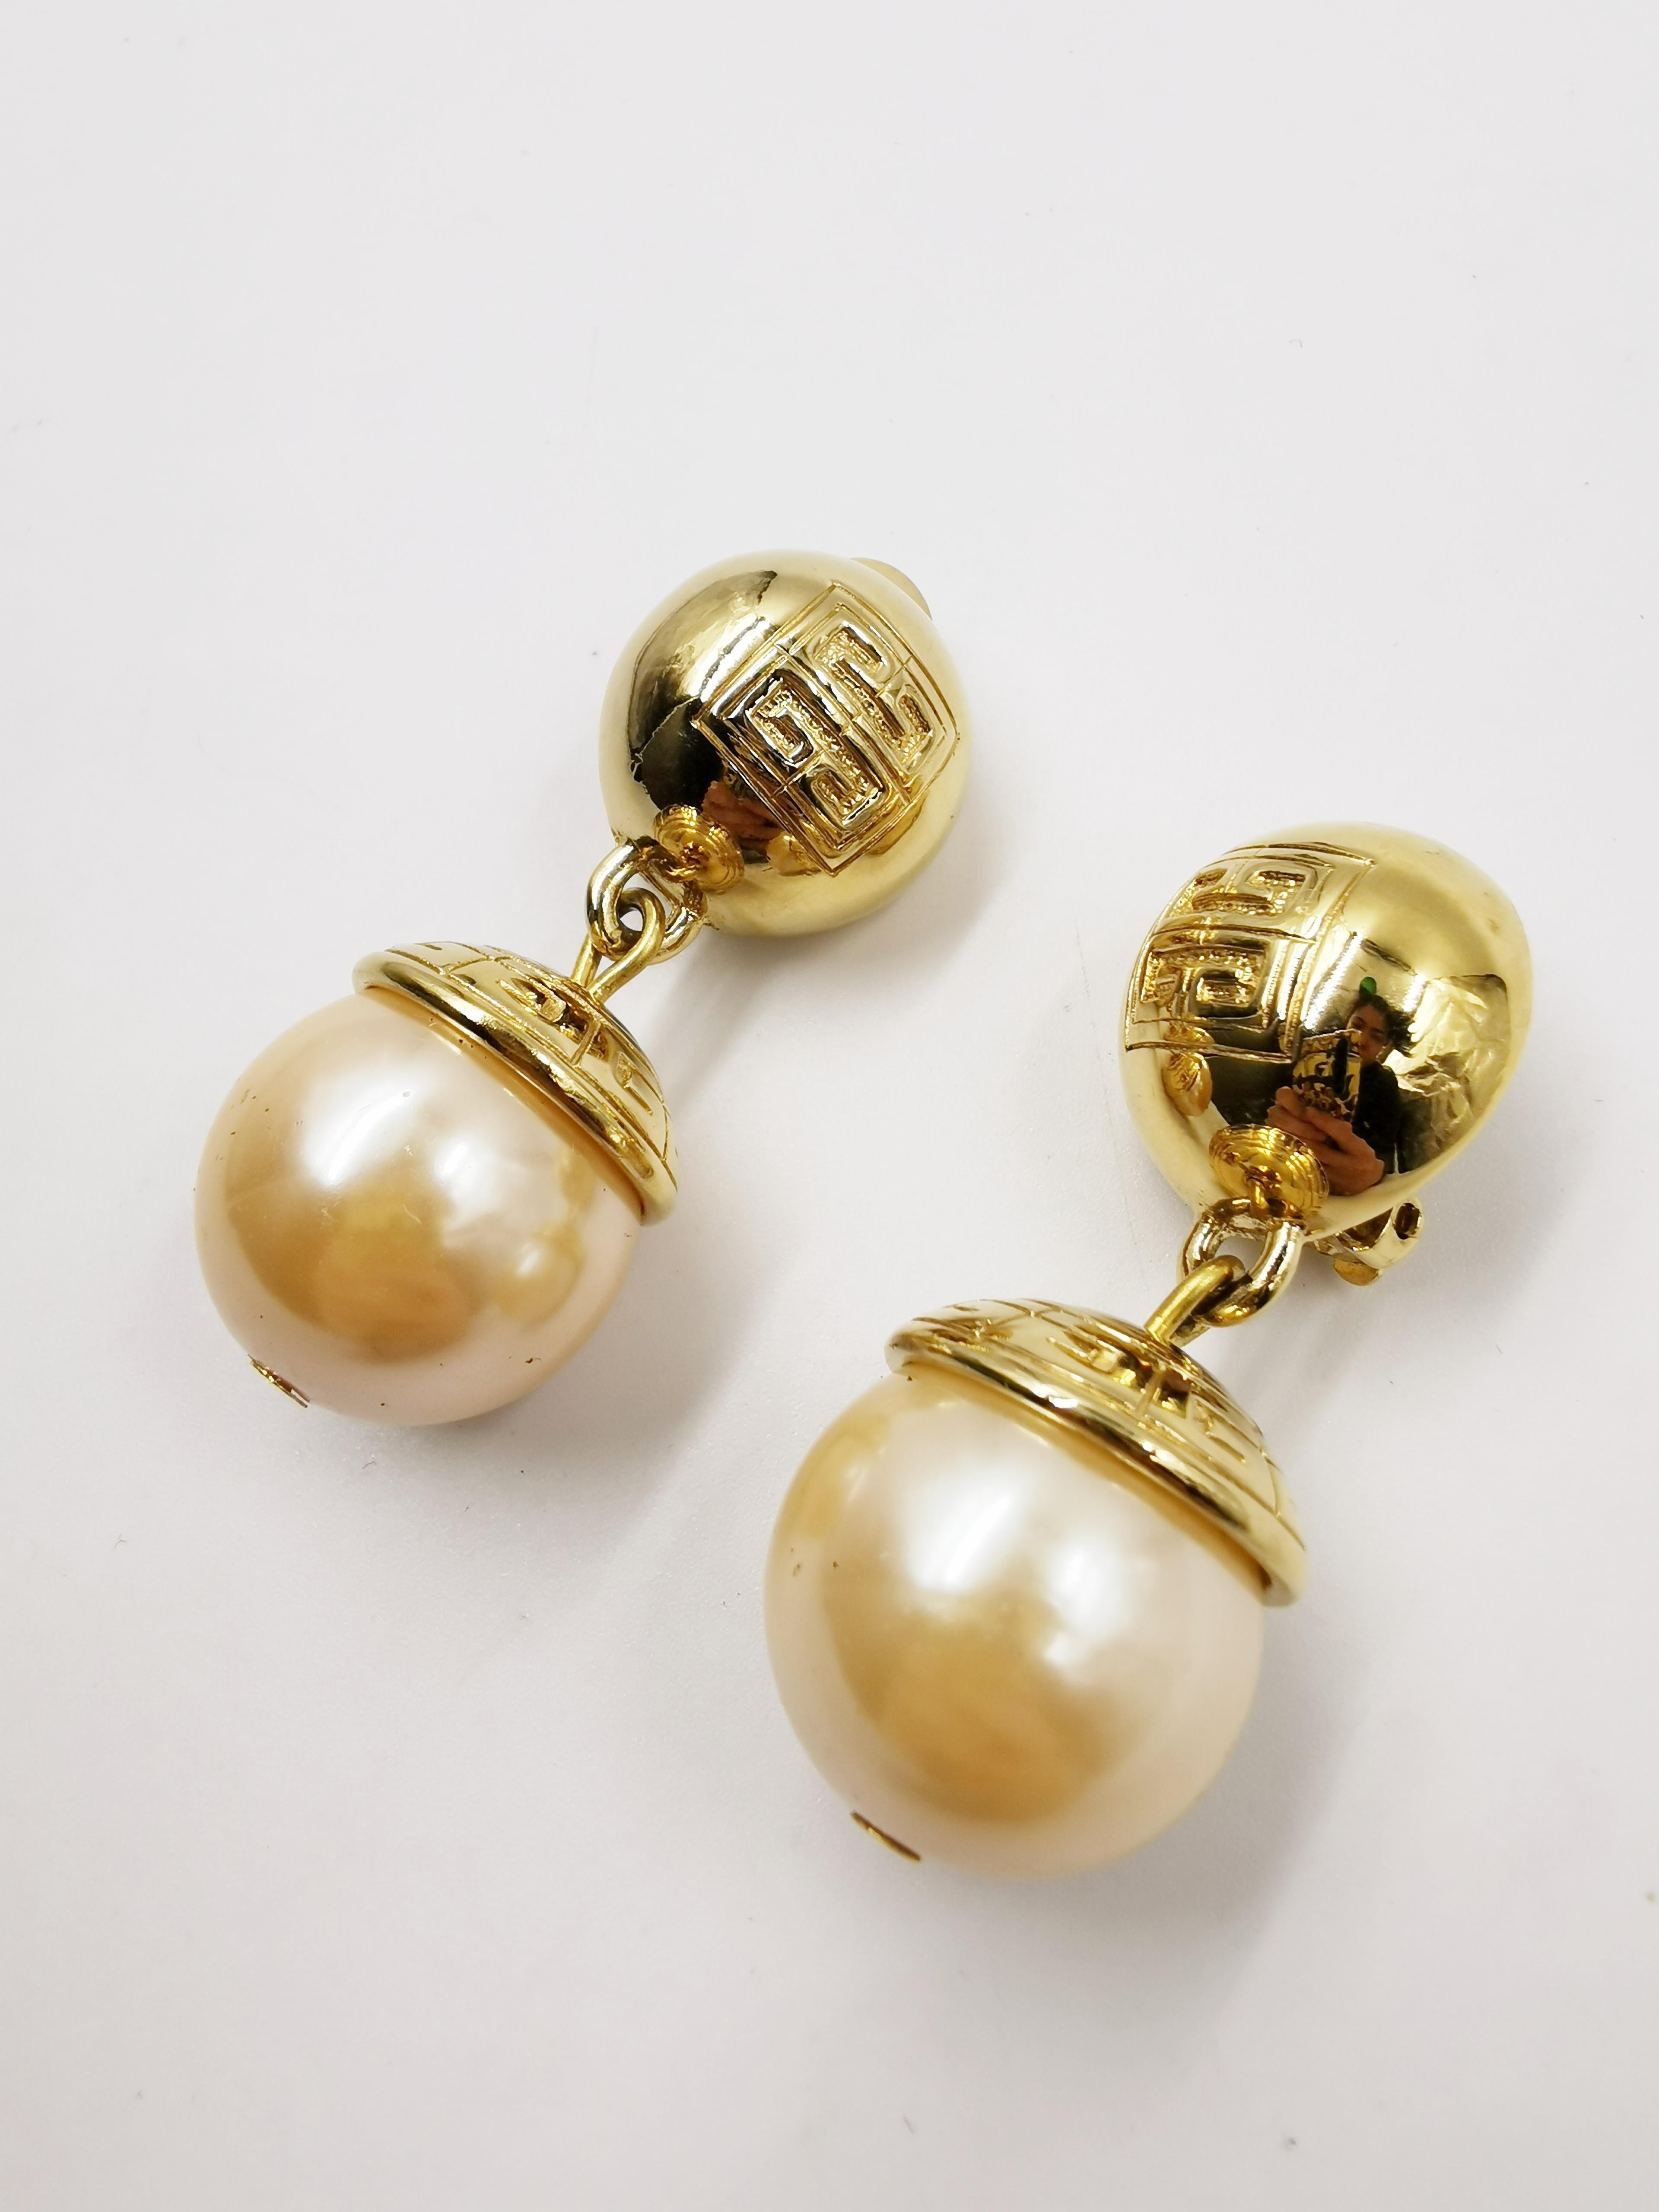 Große goldene Givenchy-Perlen-Ohrringe im Vintage-Stil, die perfekt zu unserer Karl Lagerfeld Jumbo-Halskette passen.

Merkmal
Material: Goldfarbenes Metall und Perlen
Zustand: Ausgezeichnet
Farbe: Weiß und Gold
Abmessung: 5,5 cm
Zeitraum: